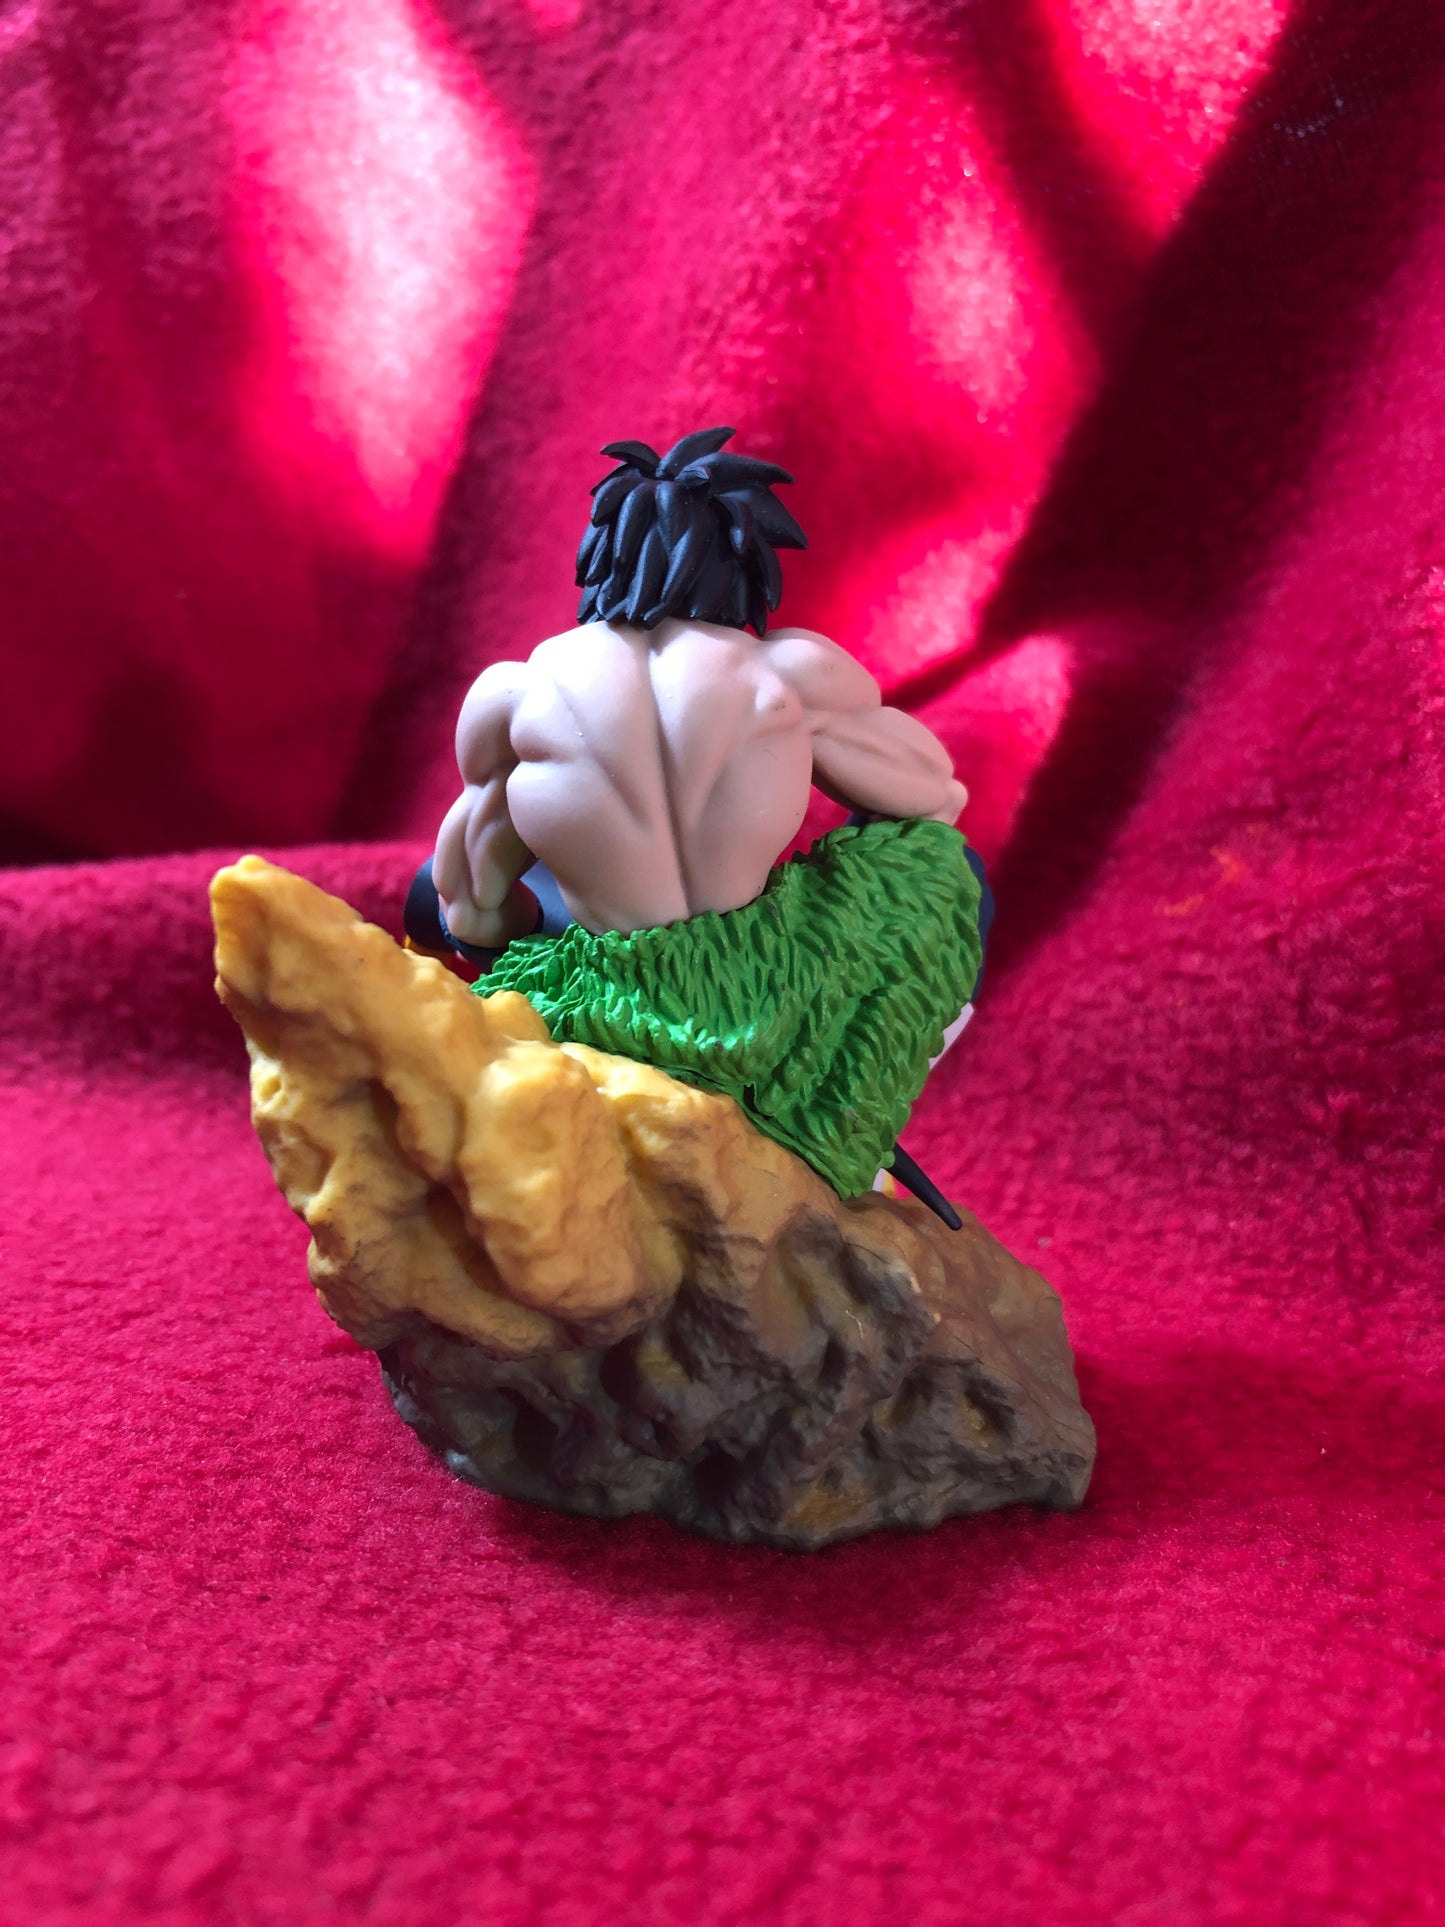 Dragon Ball - Dracap Re Birth - Figurine Diorama n°2 - 7 cm - MEGAHOUSE